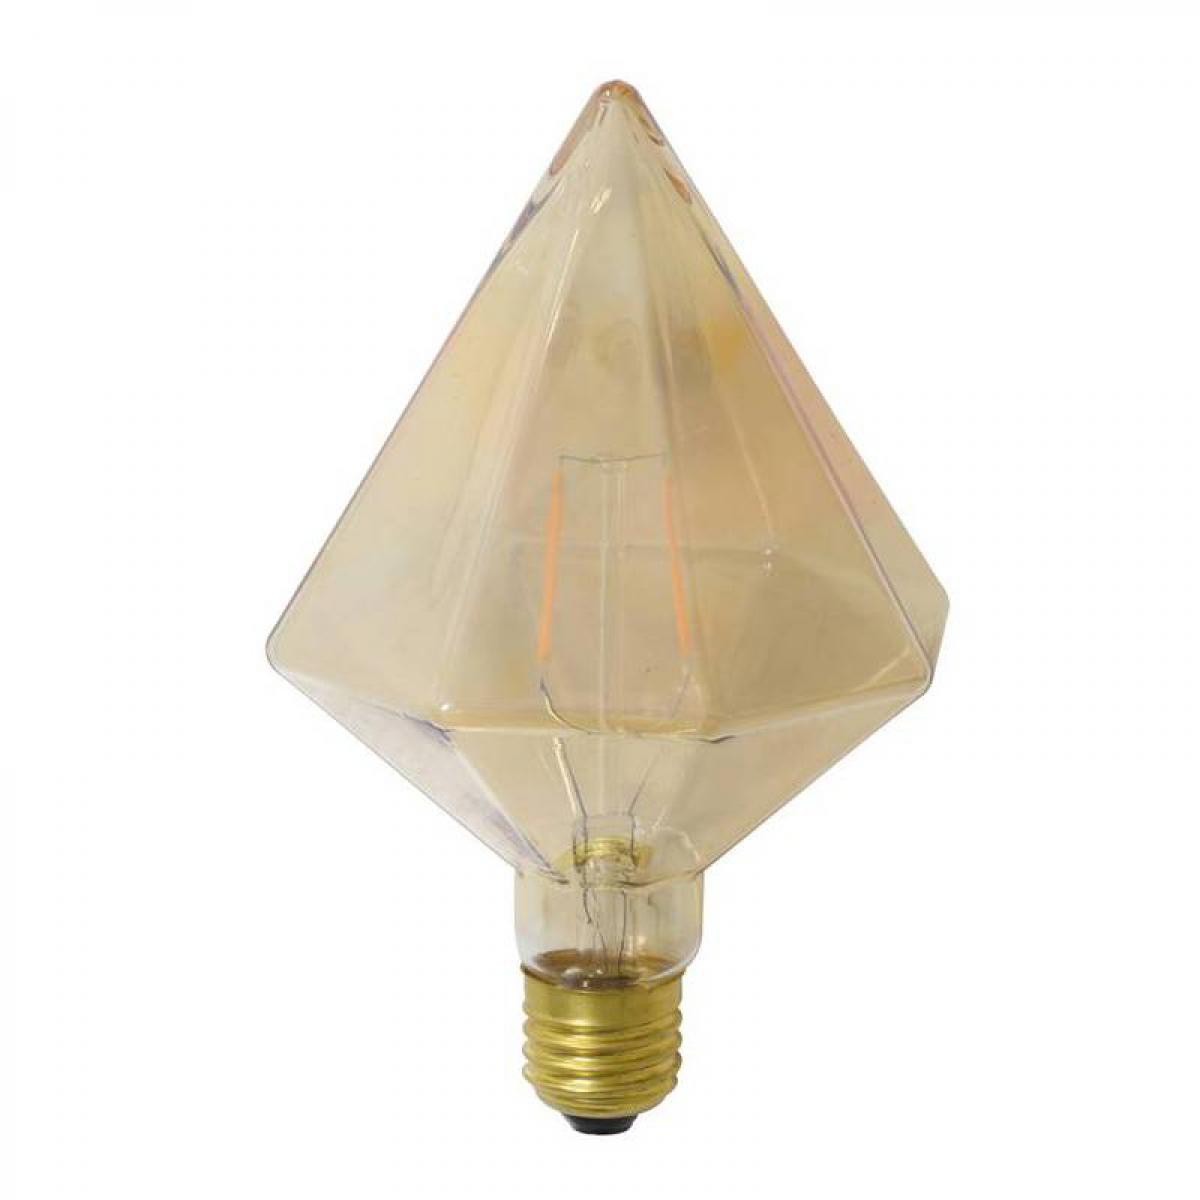 L'Héritier Du Temps - Ampoule Diamant Pointe à LED E27 Puissance 3W Dimmable Lumière Ambrée 11x11x17cm - Ampoules LED